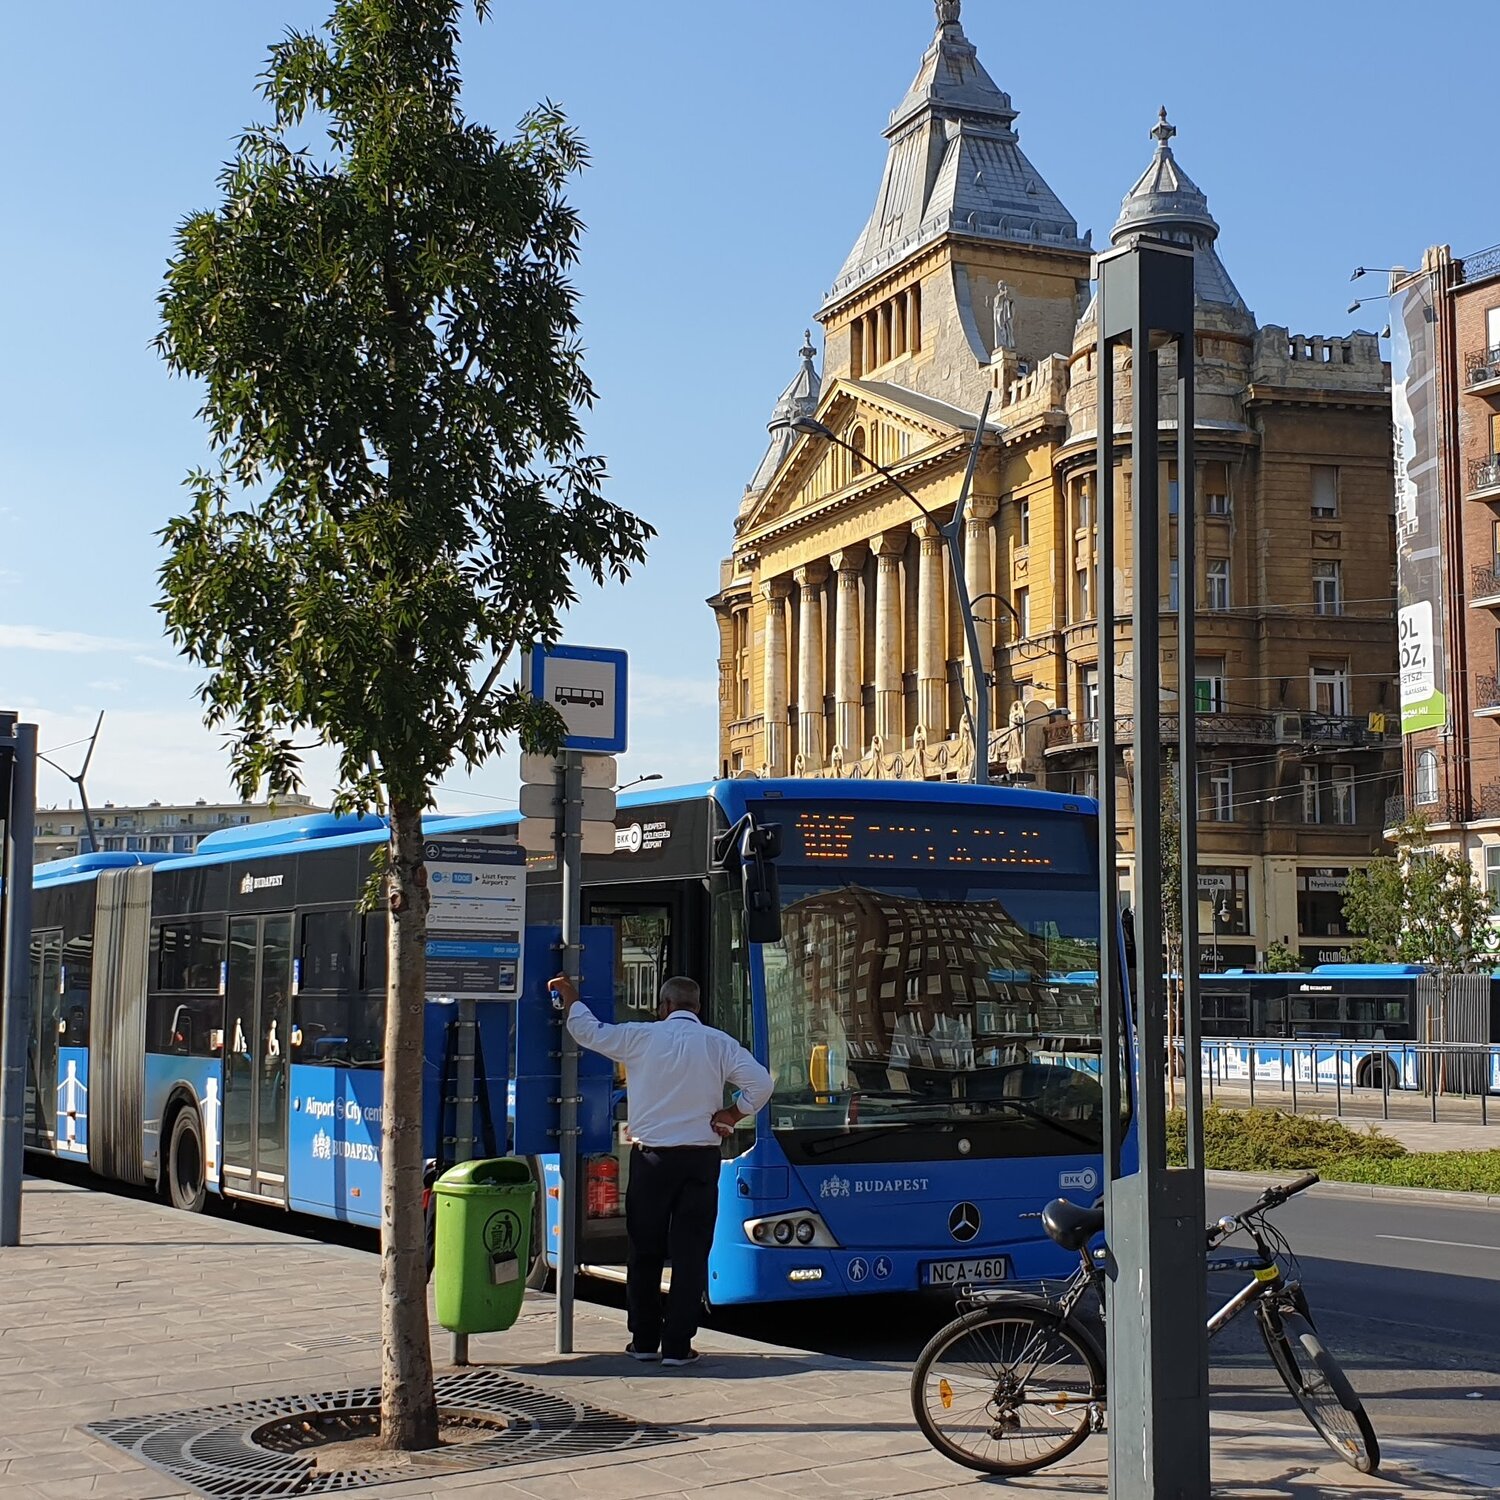 Автобусы, троллейбусы, трамваи и паромы: весь общественный транспорт Будапешта